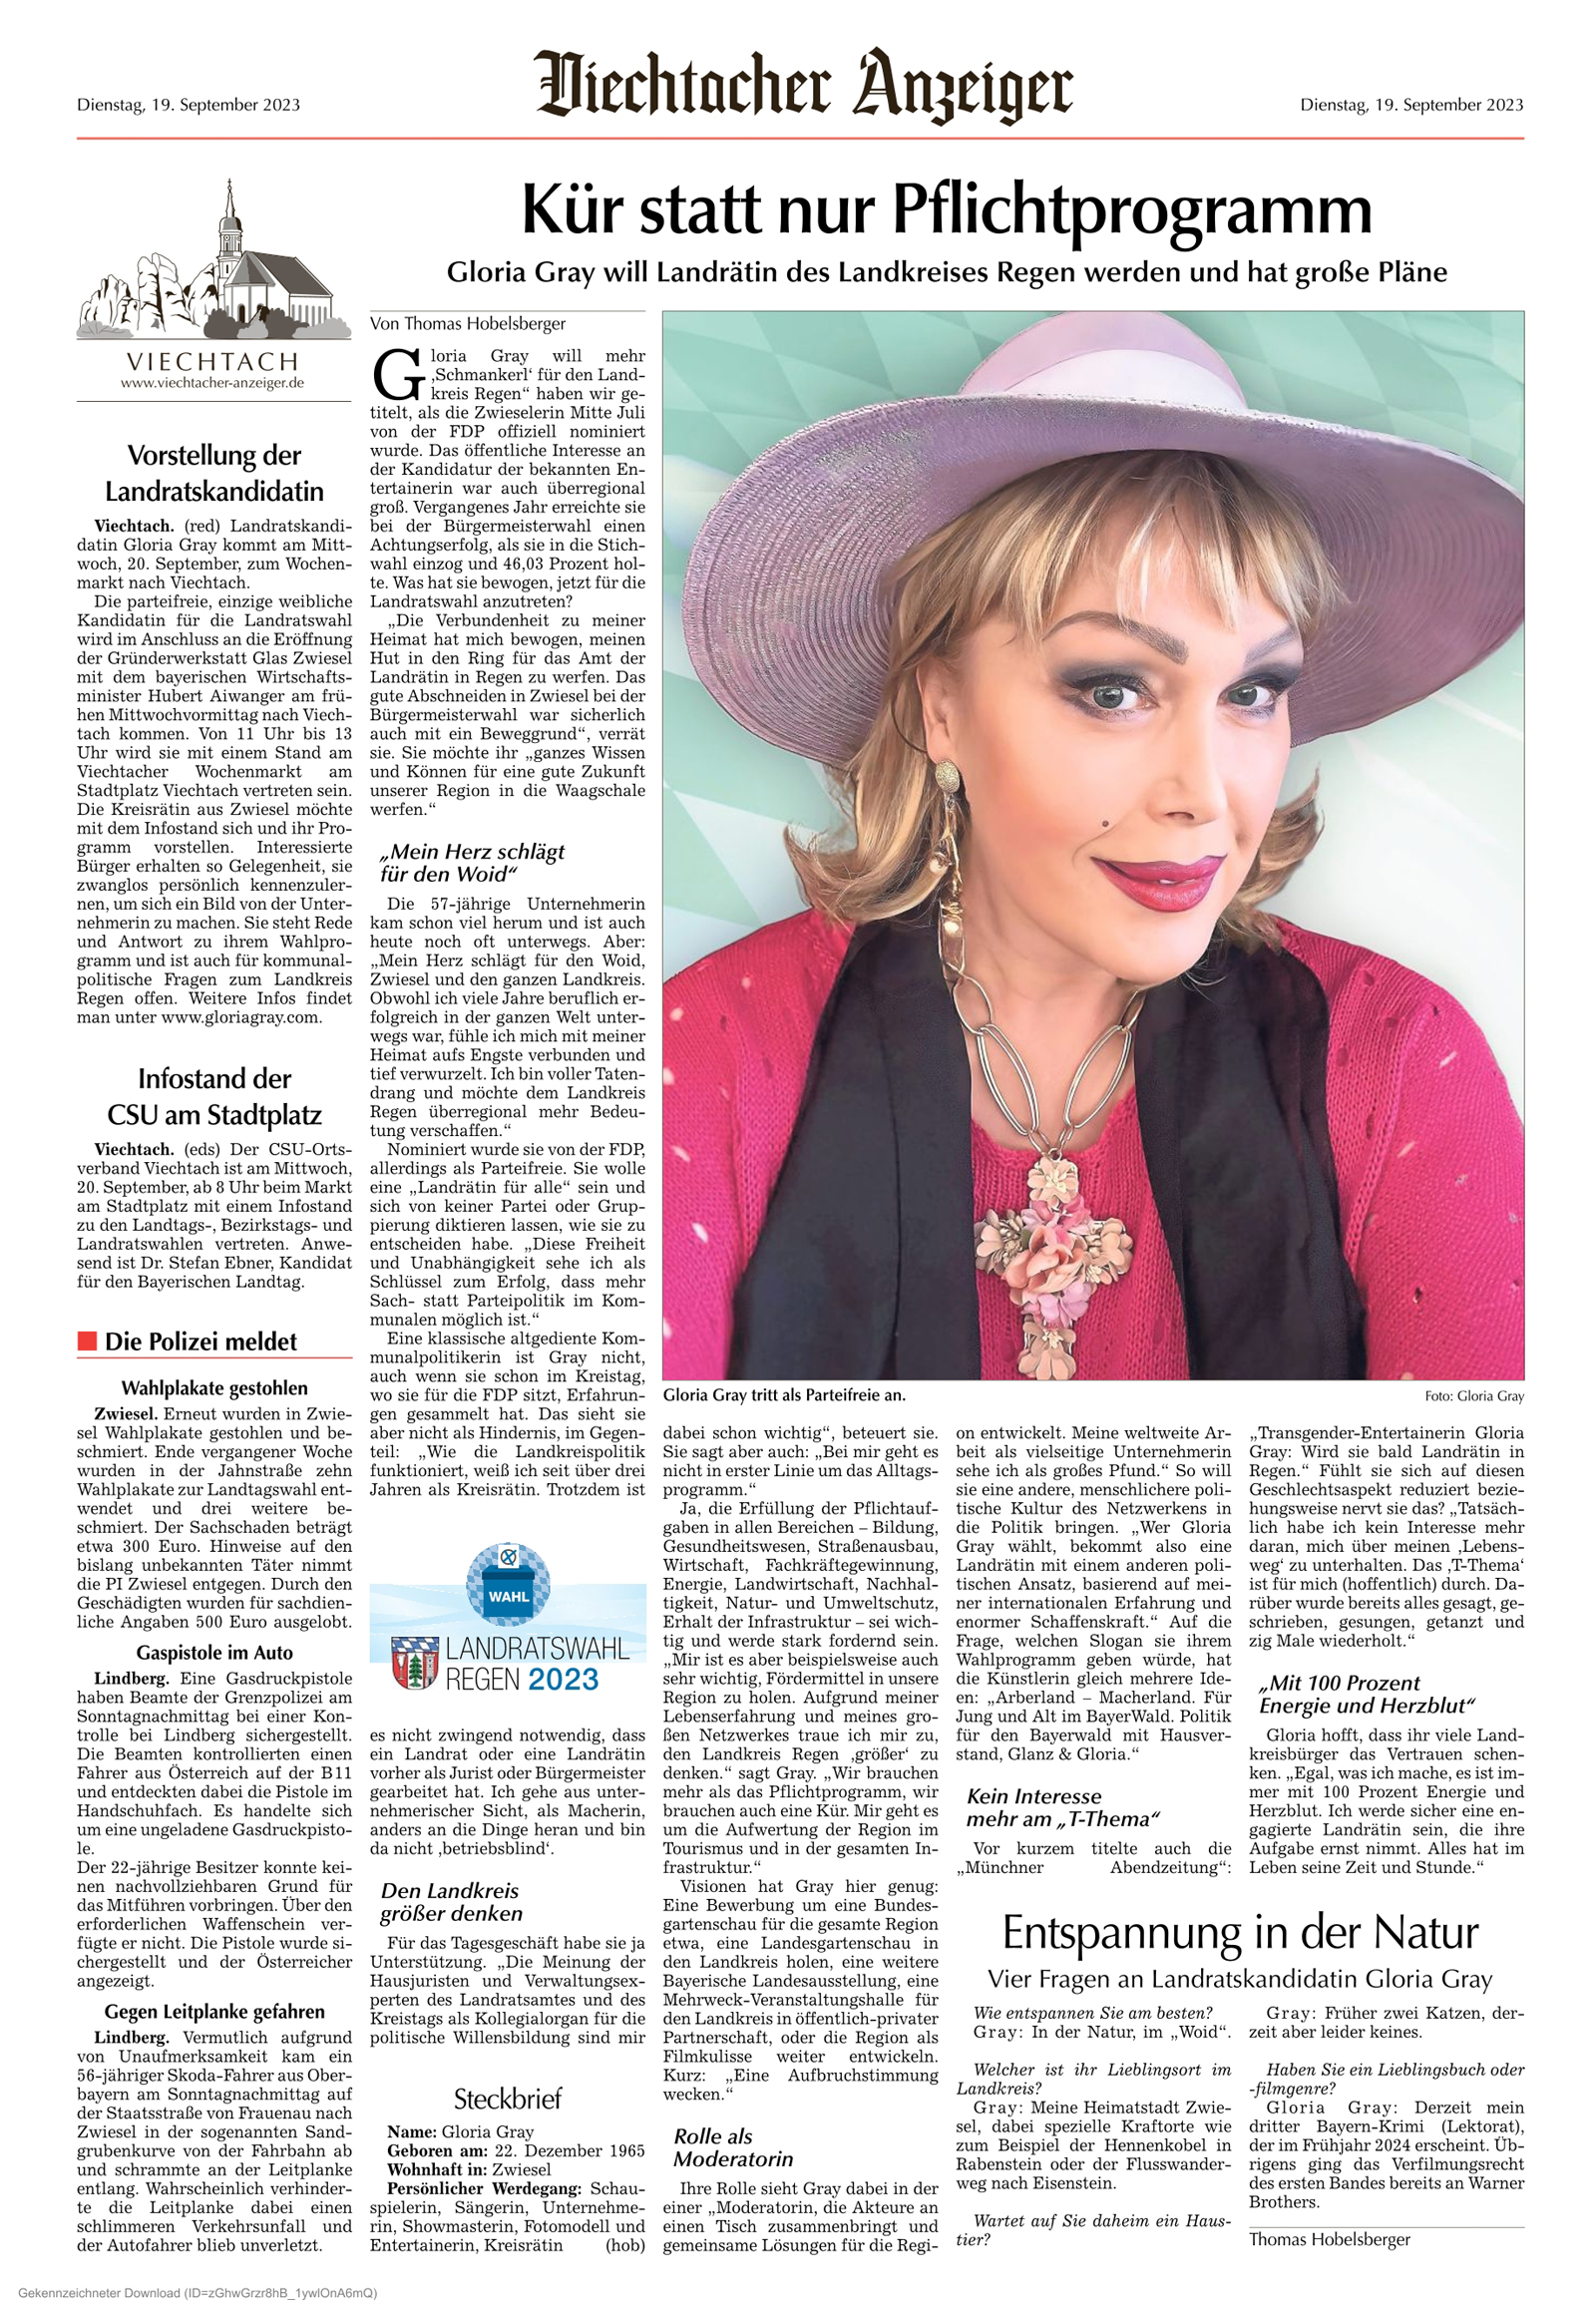 Entertainerin Gloria Gray hat einen Bayern-Krimi geschrieben